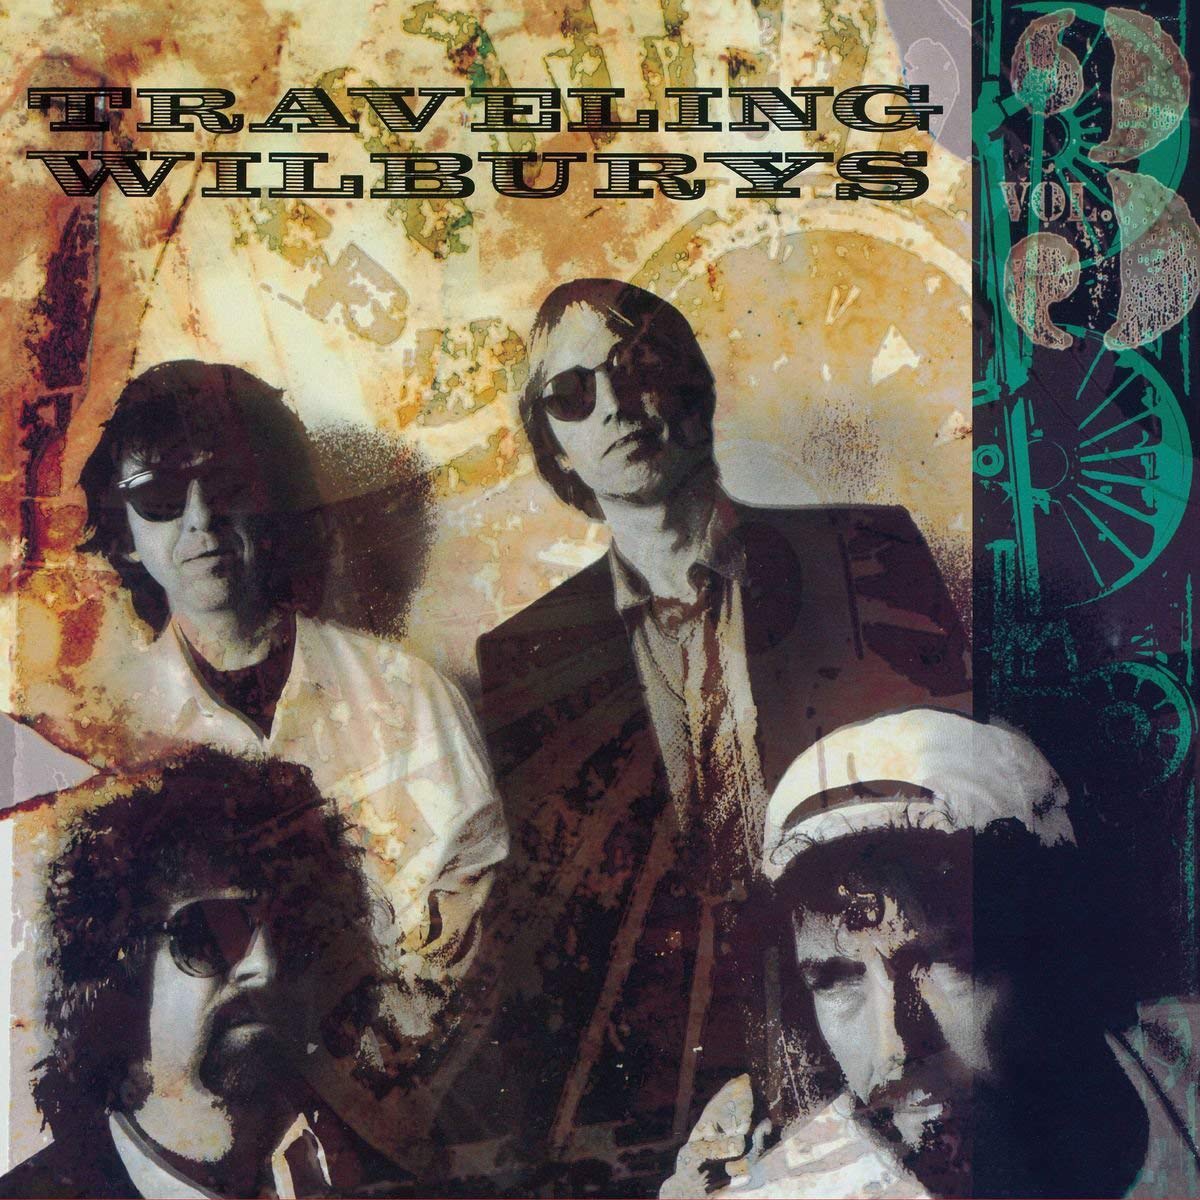 The Traveling Wilburys // The Traveling Wilburys, Vol. 3